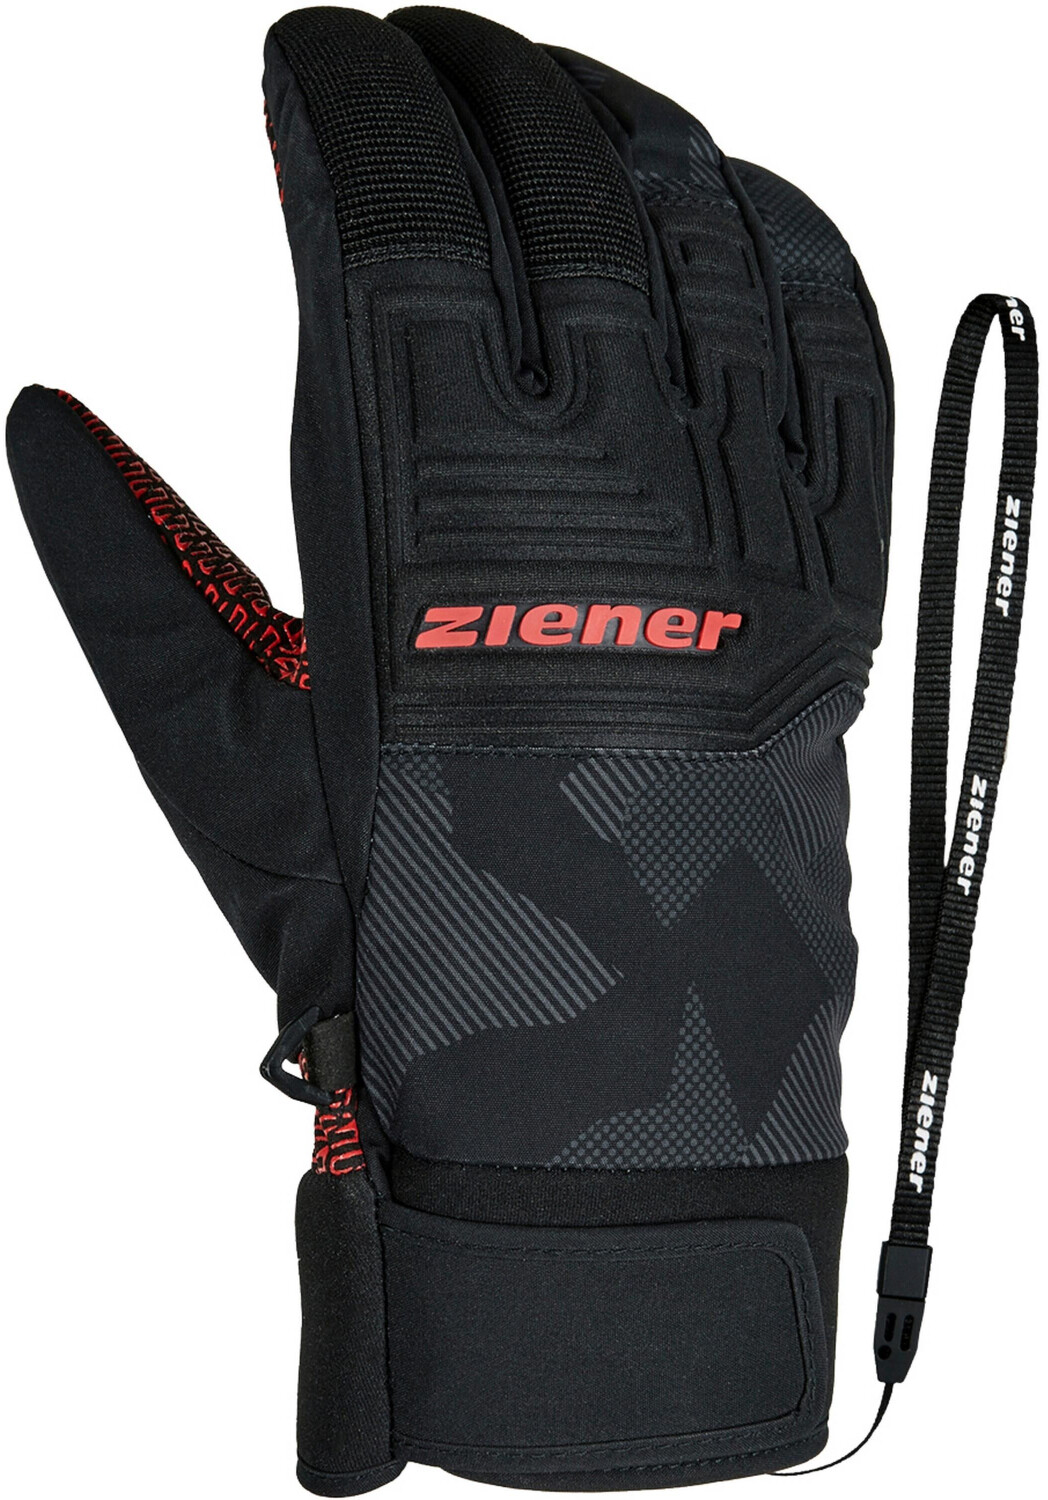 Ziener Garim AS Alpine 39,99 Glove Preisvergleich | ab € Ski bei